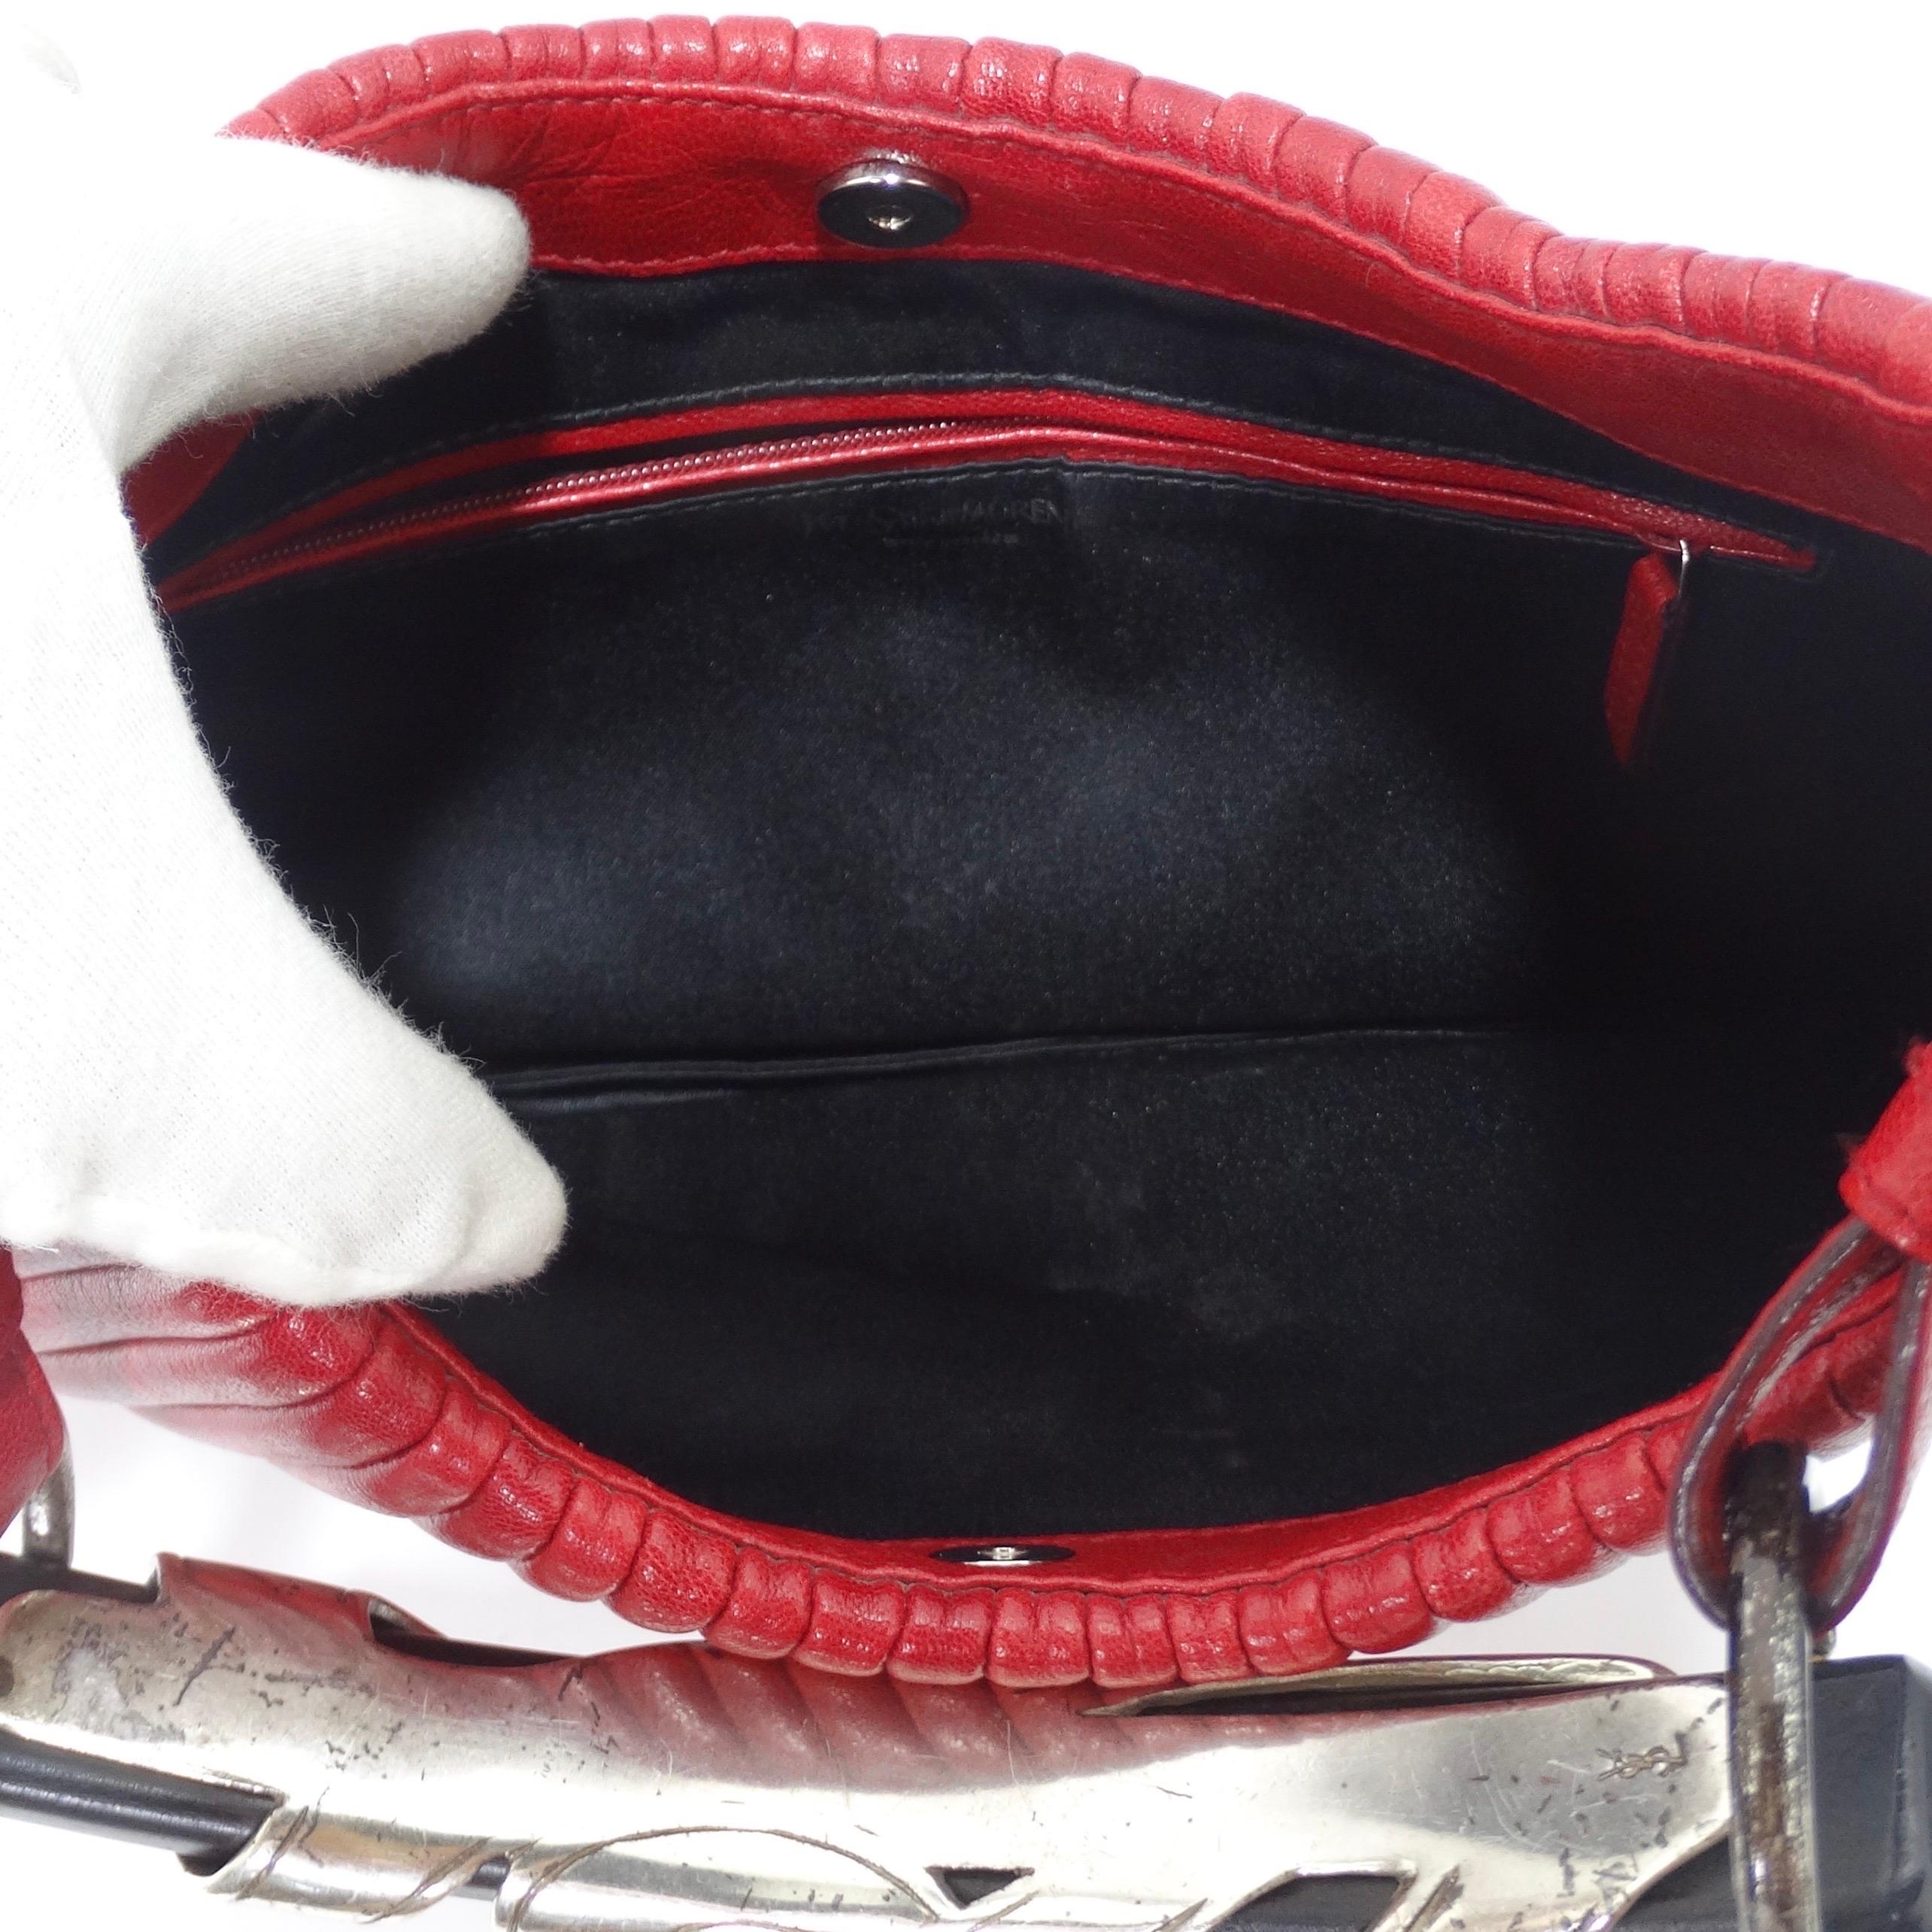 Tom Ford for Yves Saint Laurent Rive Gauche Mombosa Leather Handbag 2